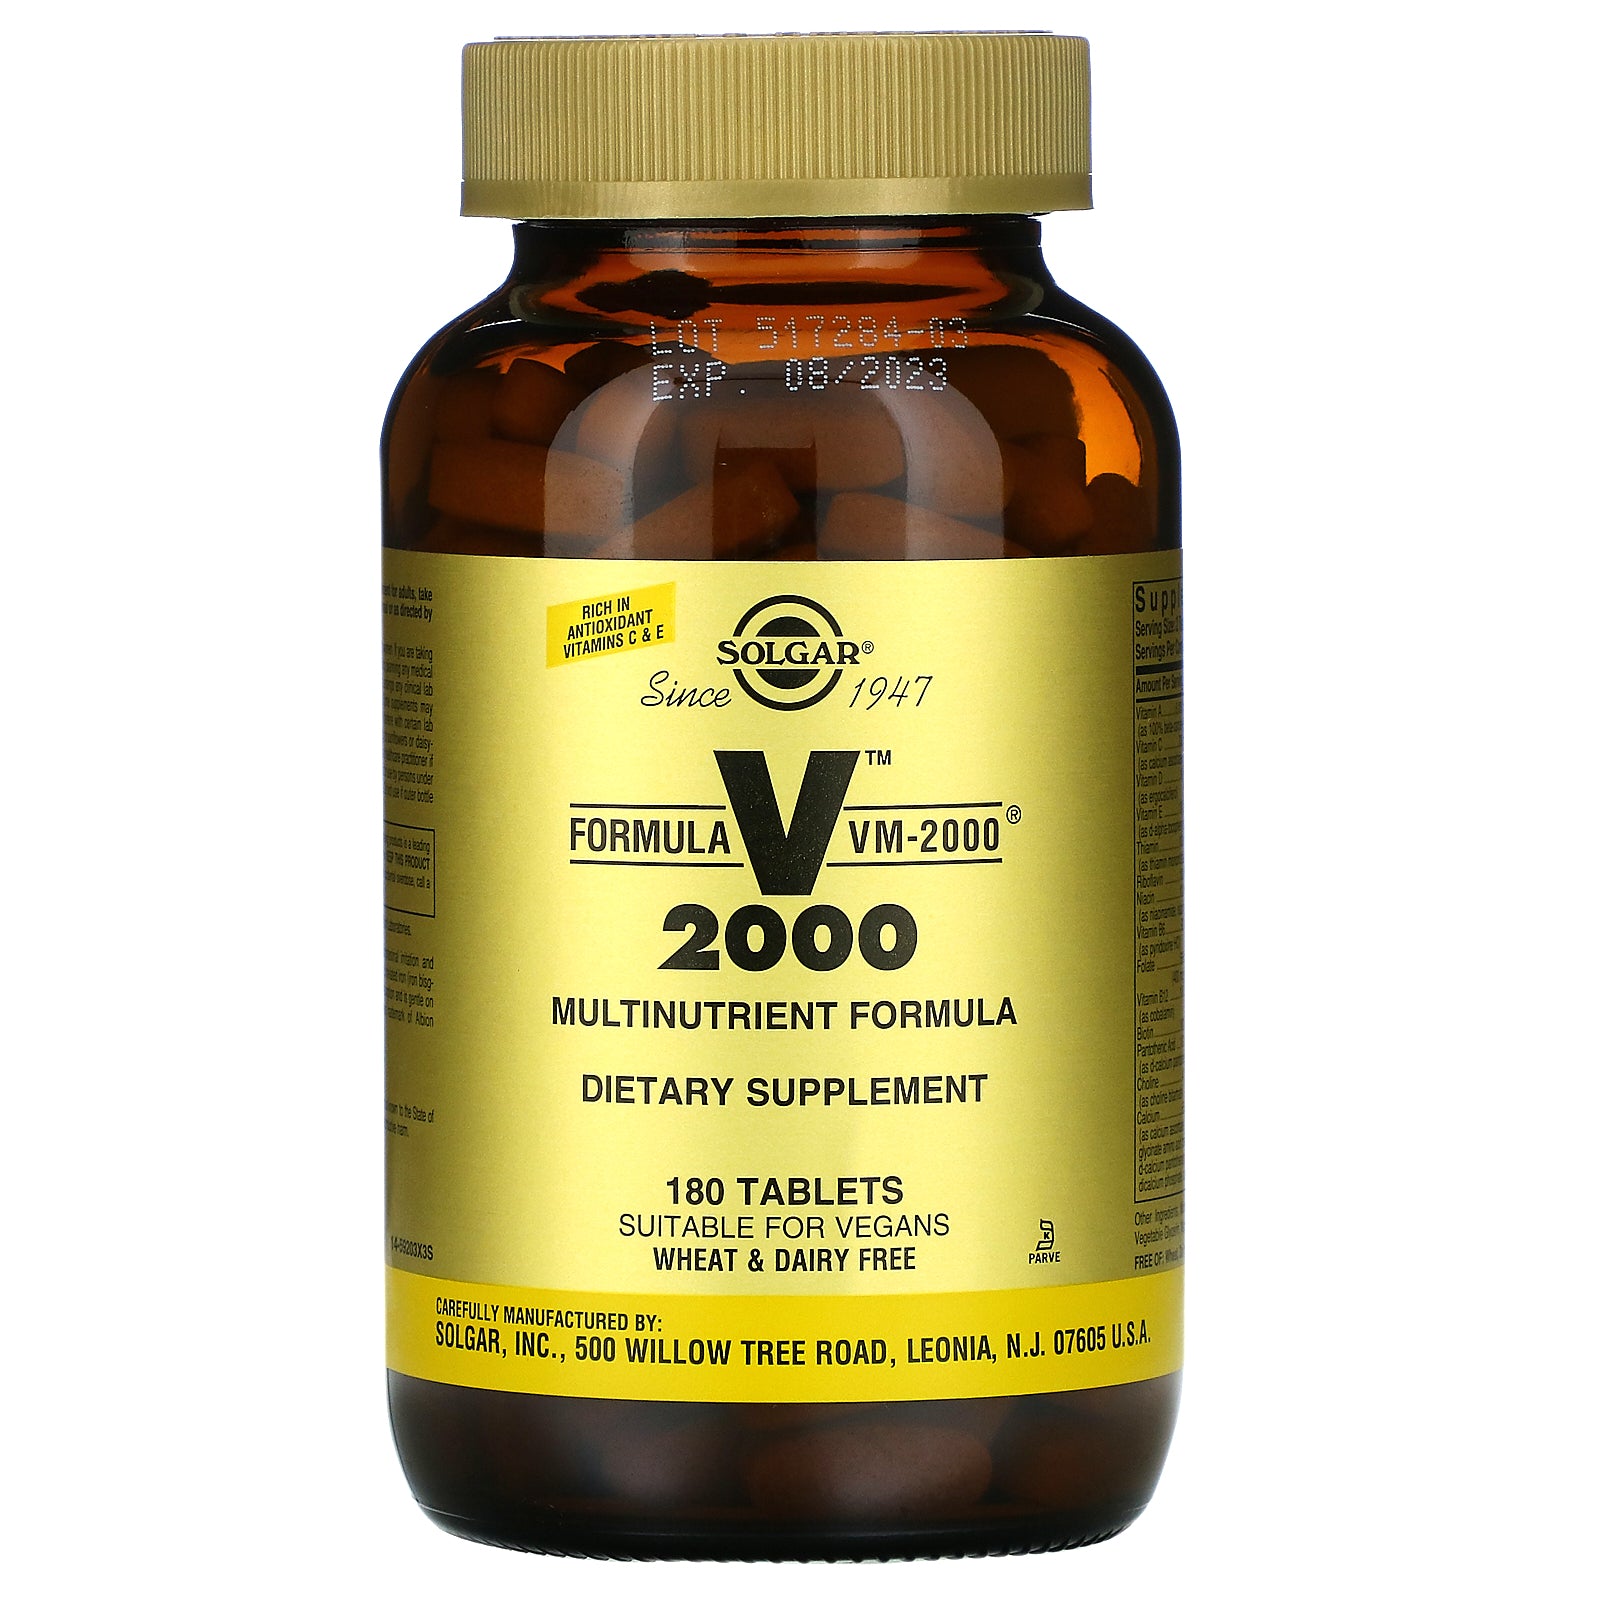 Solgar, Formula VM-2000, Multinutrient Formula, 180 Tablets